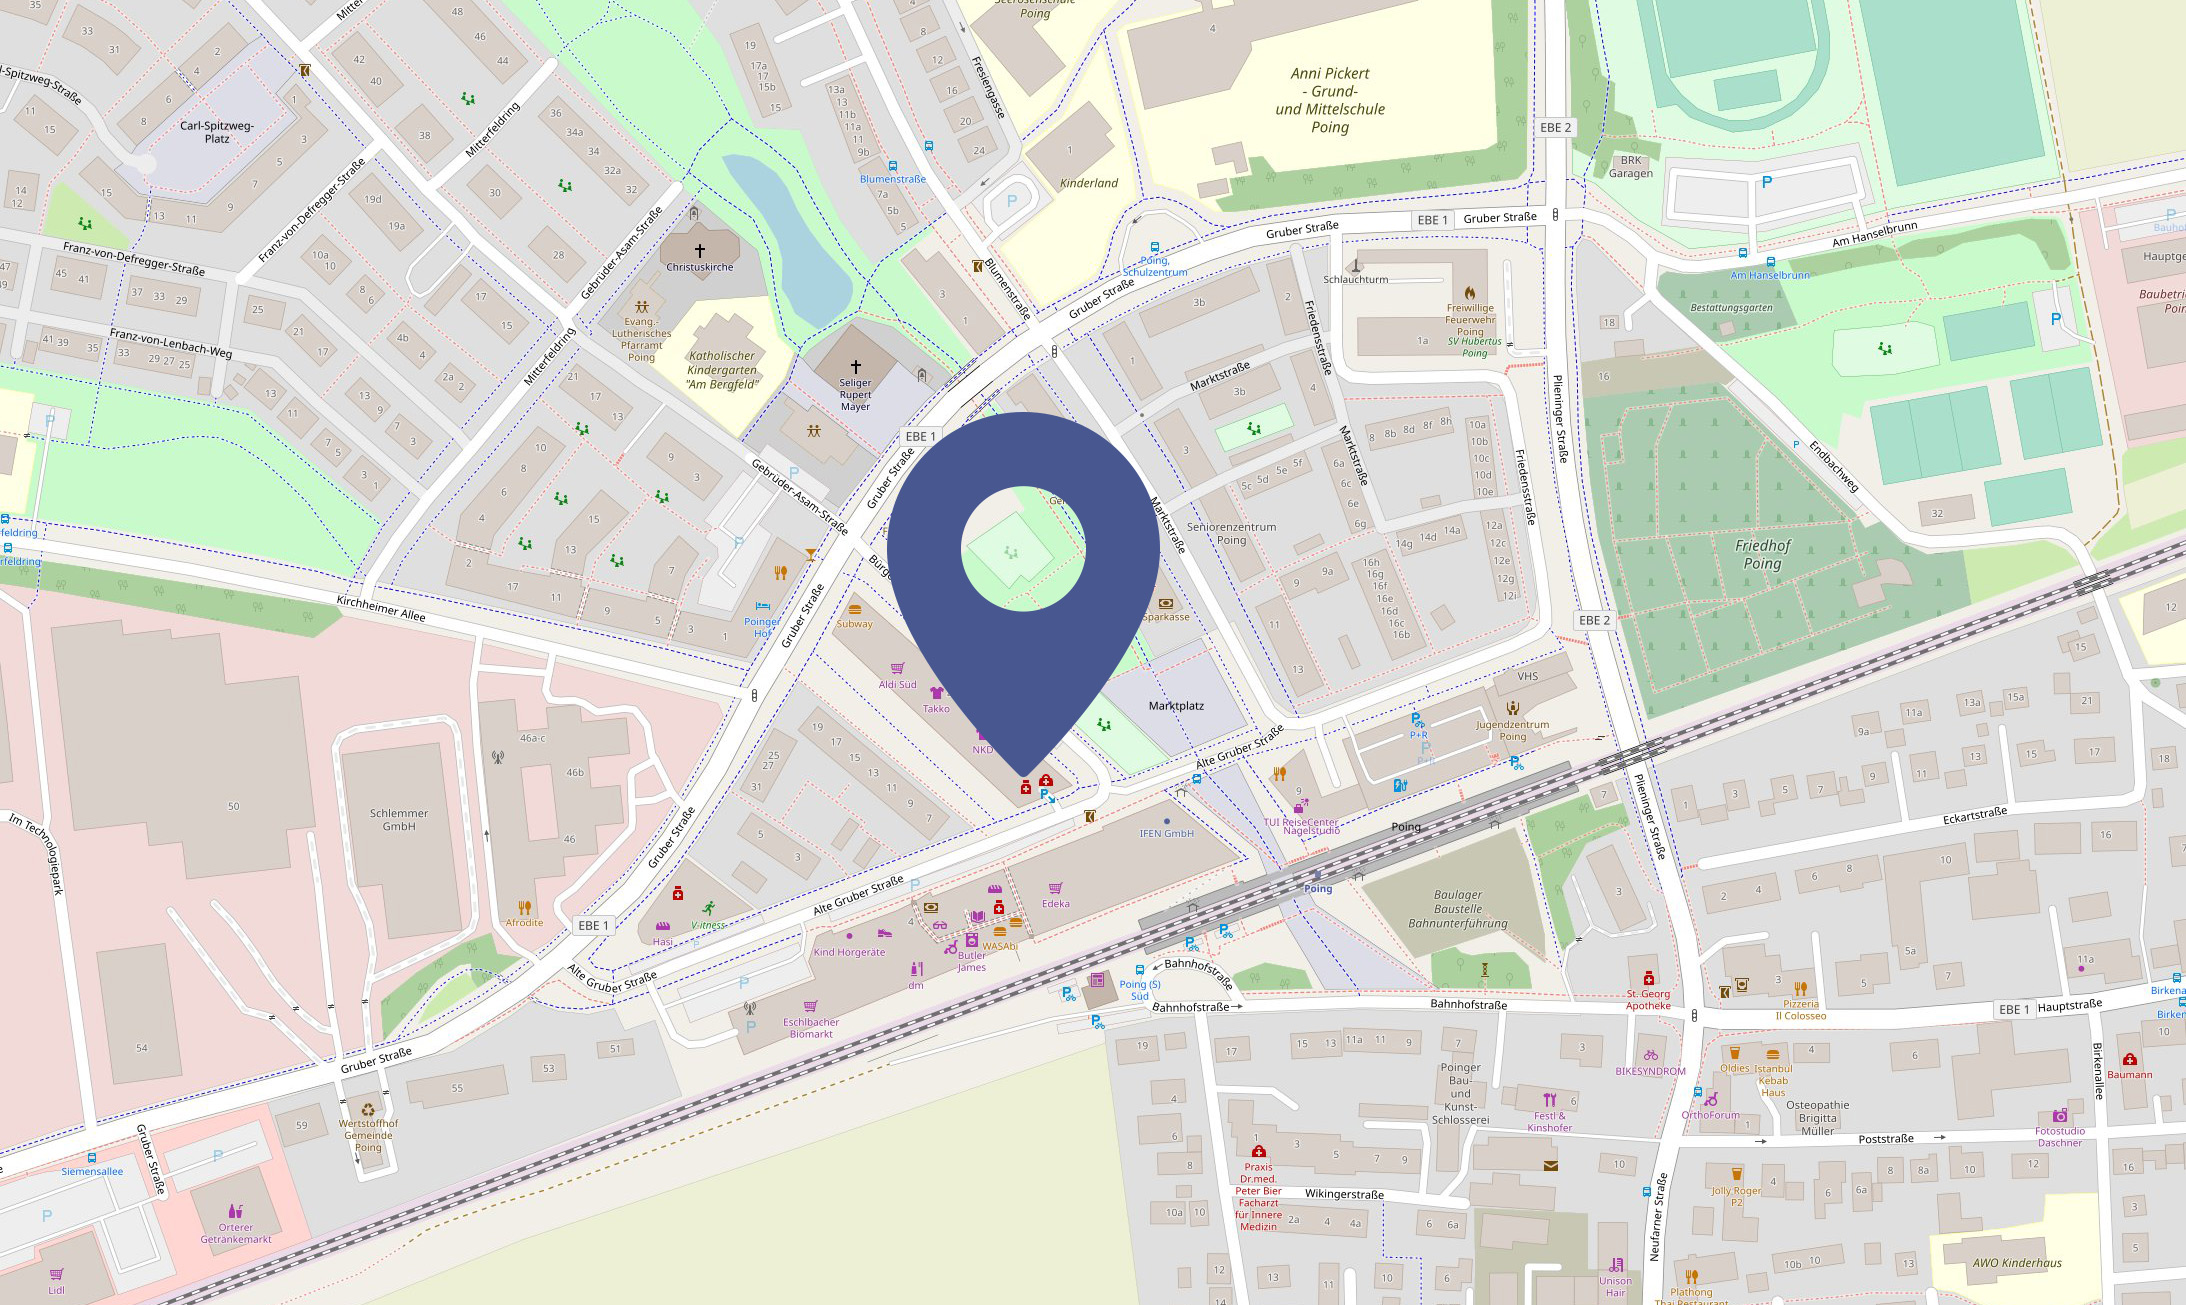 Adresse in Opern Street Map anzeigen